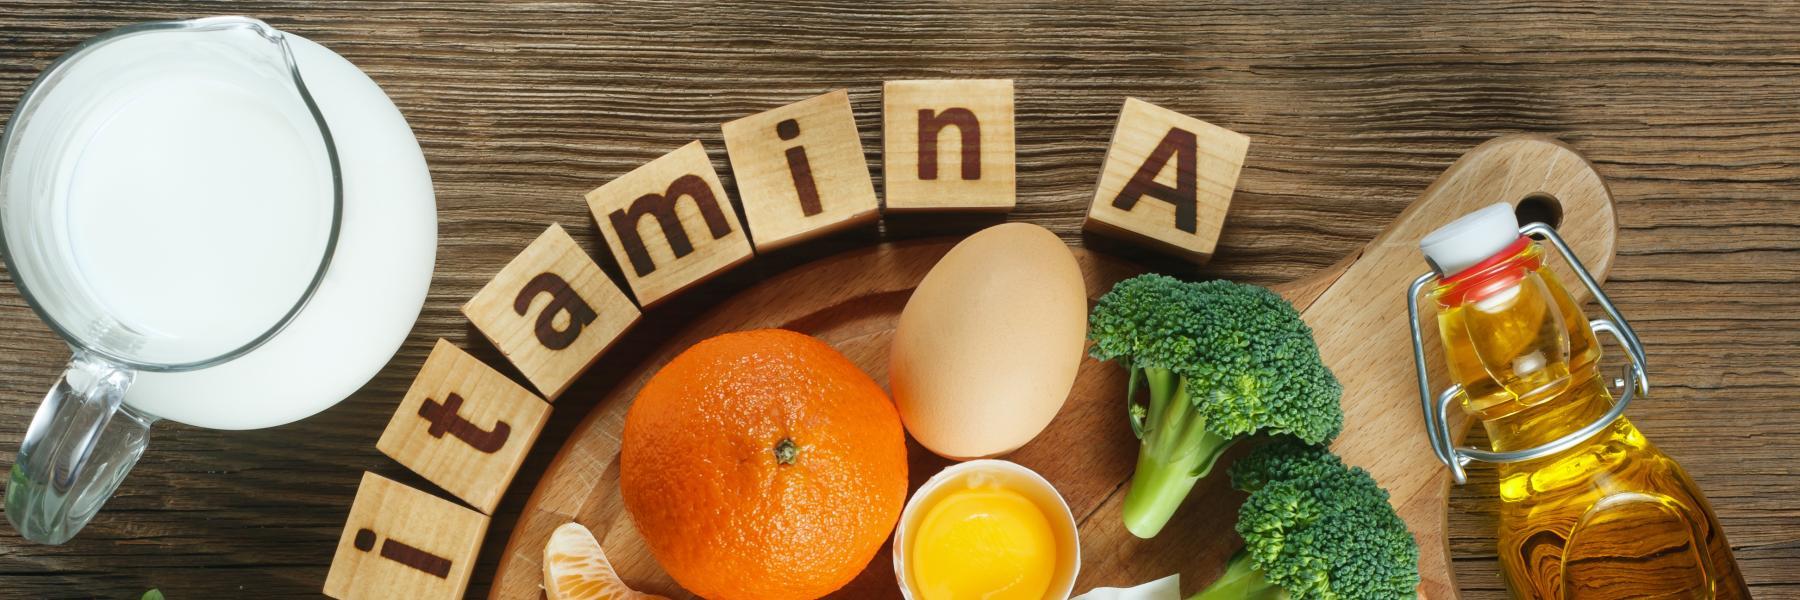 5 أطعمة غنية بفيتامين "أ" يجب أن تدرجها في نظامك الغذائي